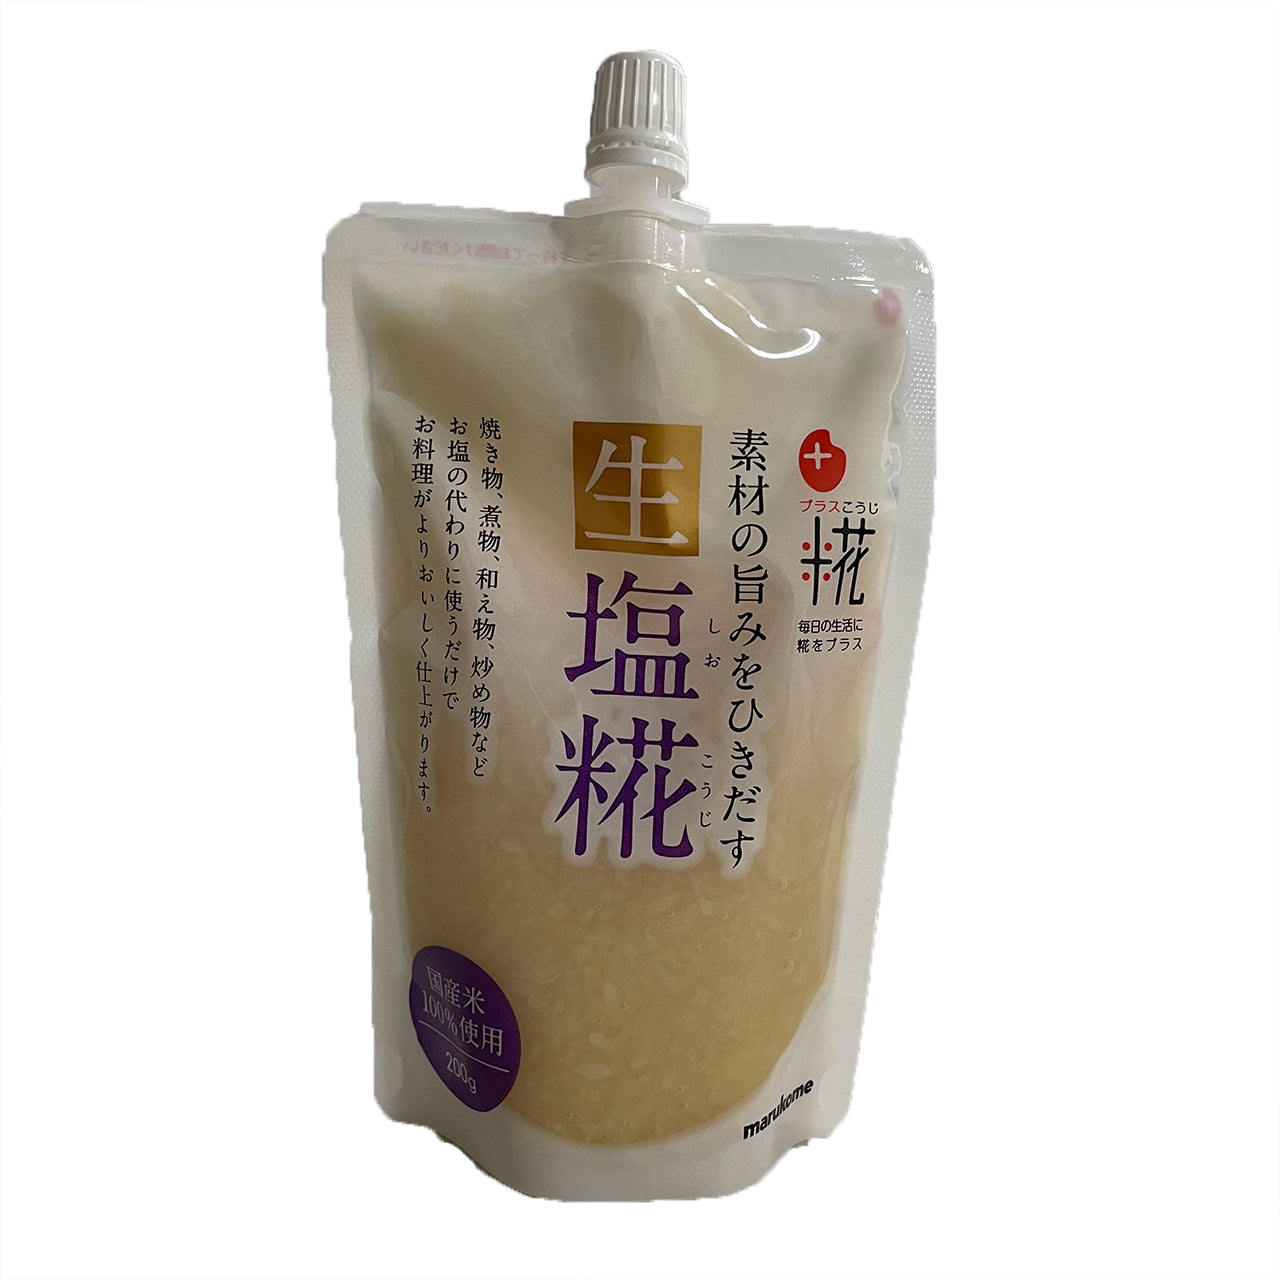 マルコメ プラス糀 生塩糀(400g) - 調味料